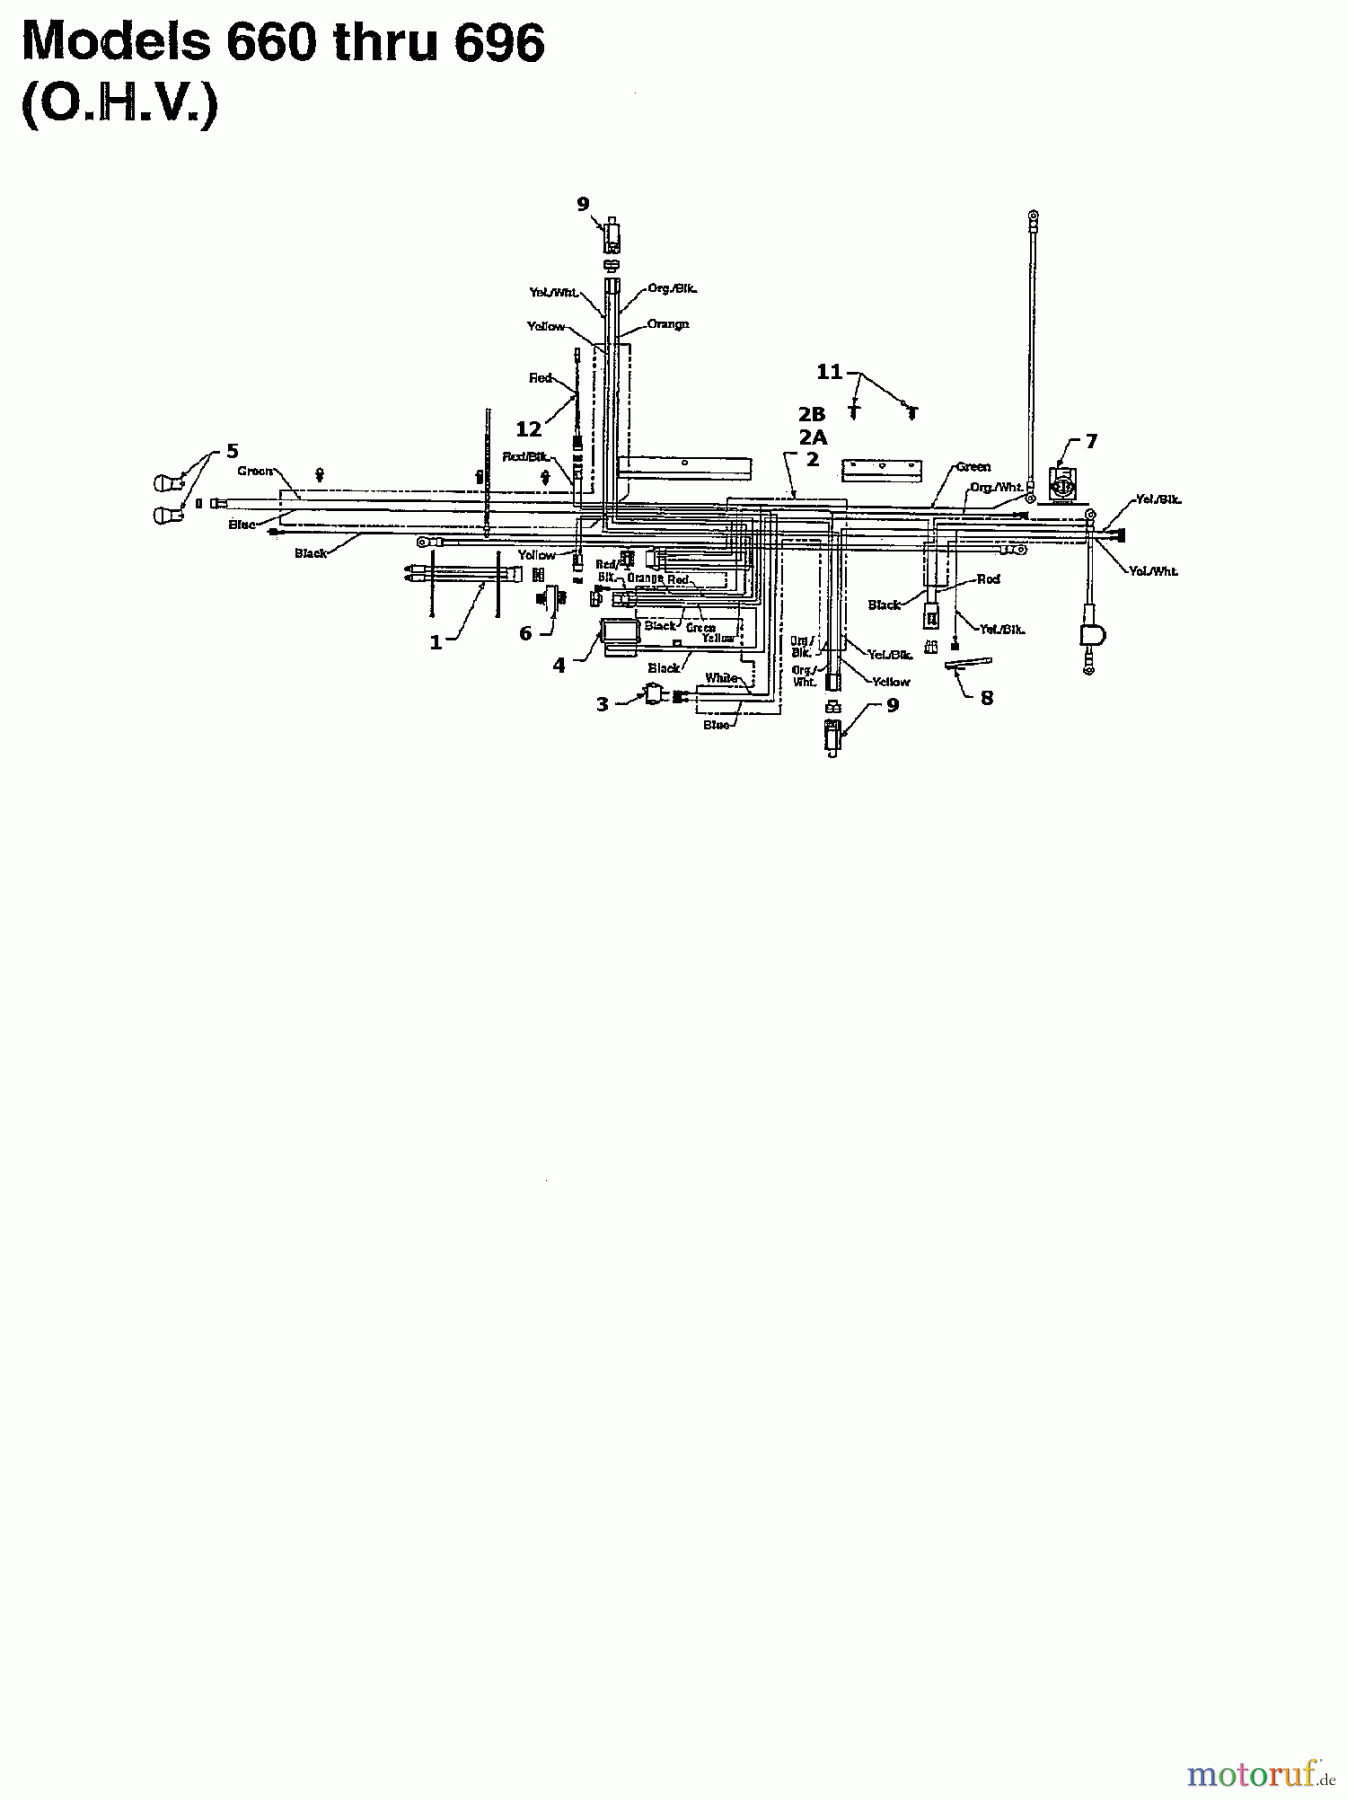  Raiffeisen Rasentraktoren RMS 16-107 135T694G628  (1995) Schaltplan für O.H.V.